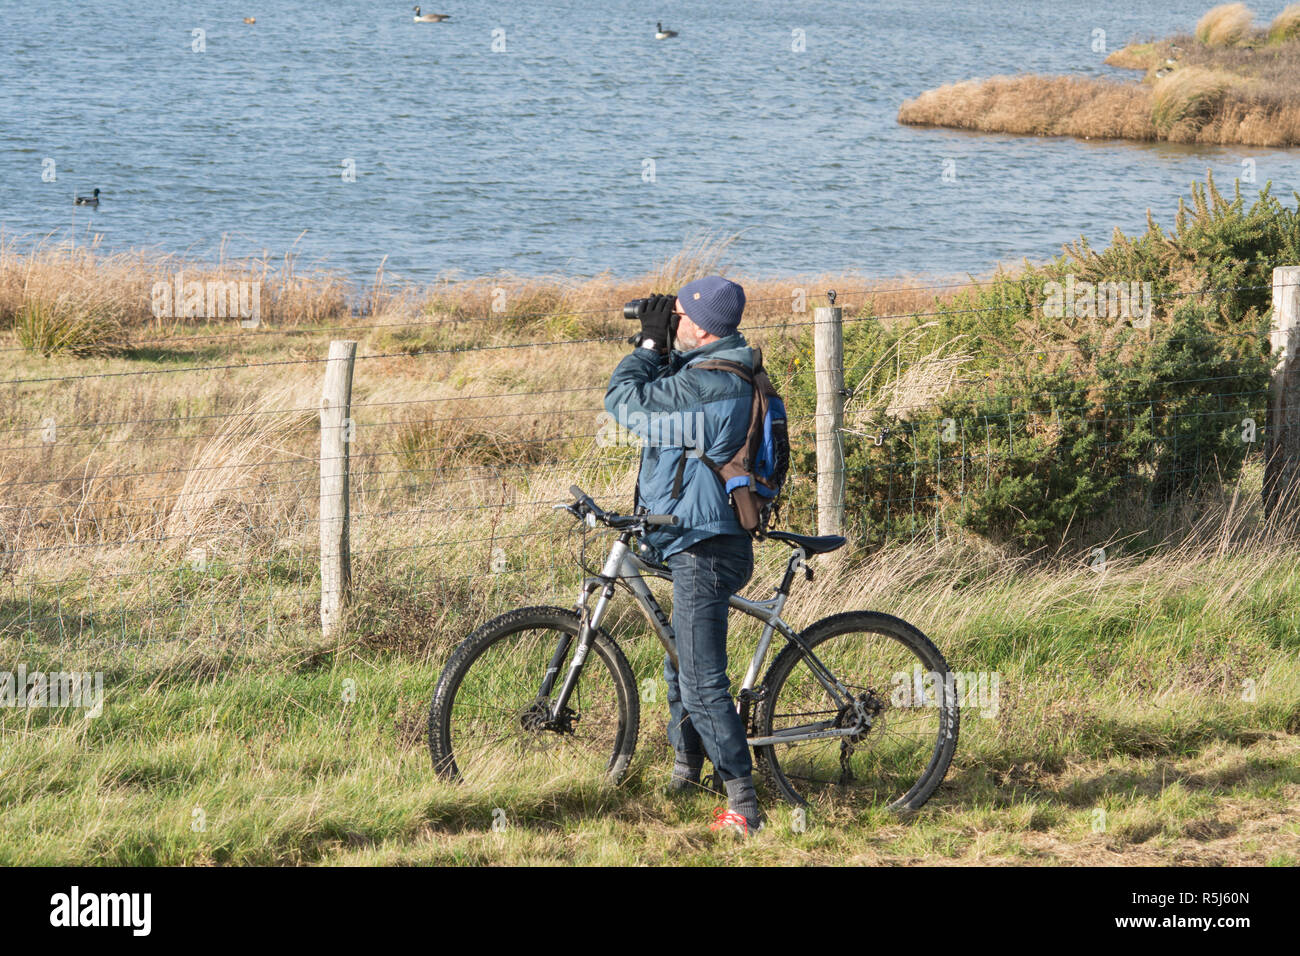 RSPB Medmerry Naturschutzgebiet an der Küste, West Sussex, UK. Vogelbeobachter auf einem Fahrrad an Vögel auf der Stelze pools Blick durch ein Fernglas Stockfoto